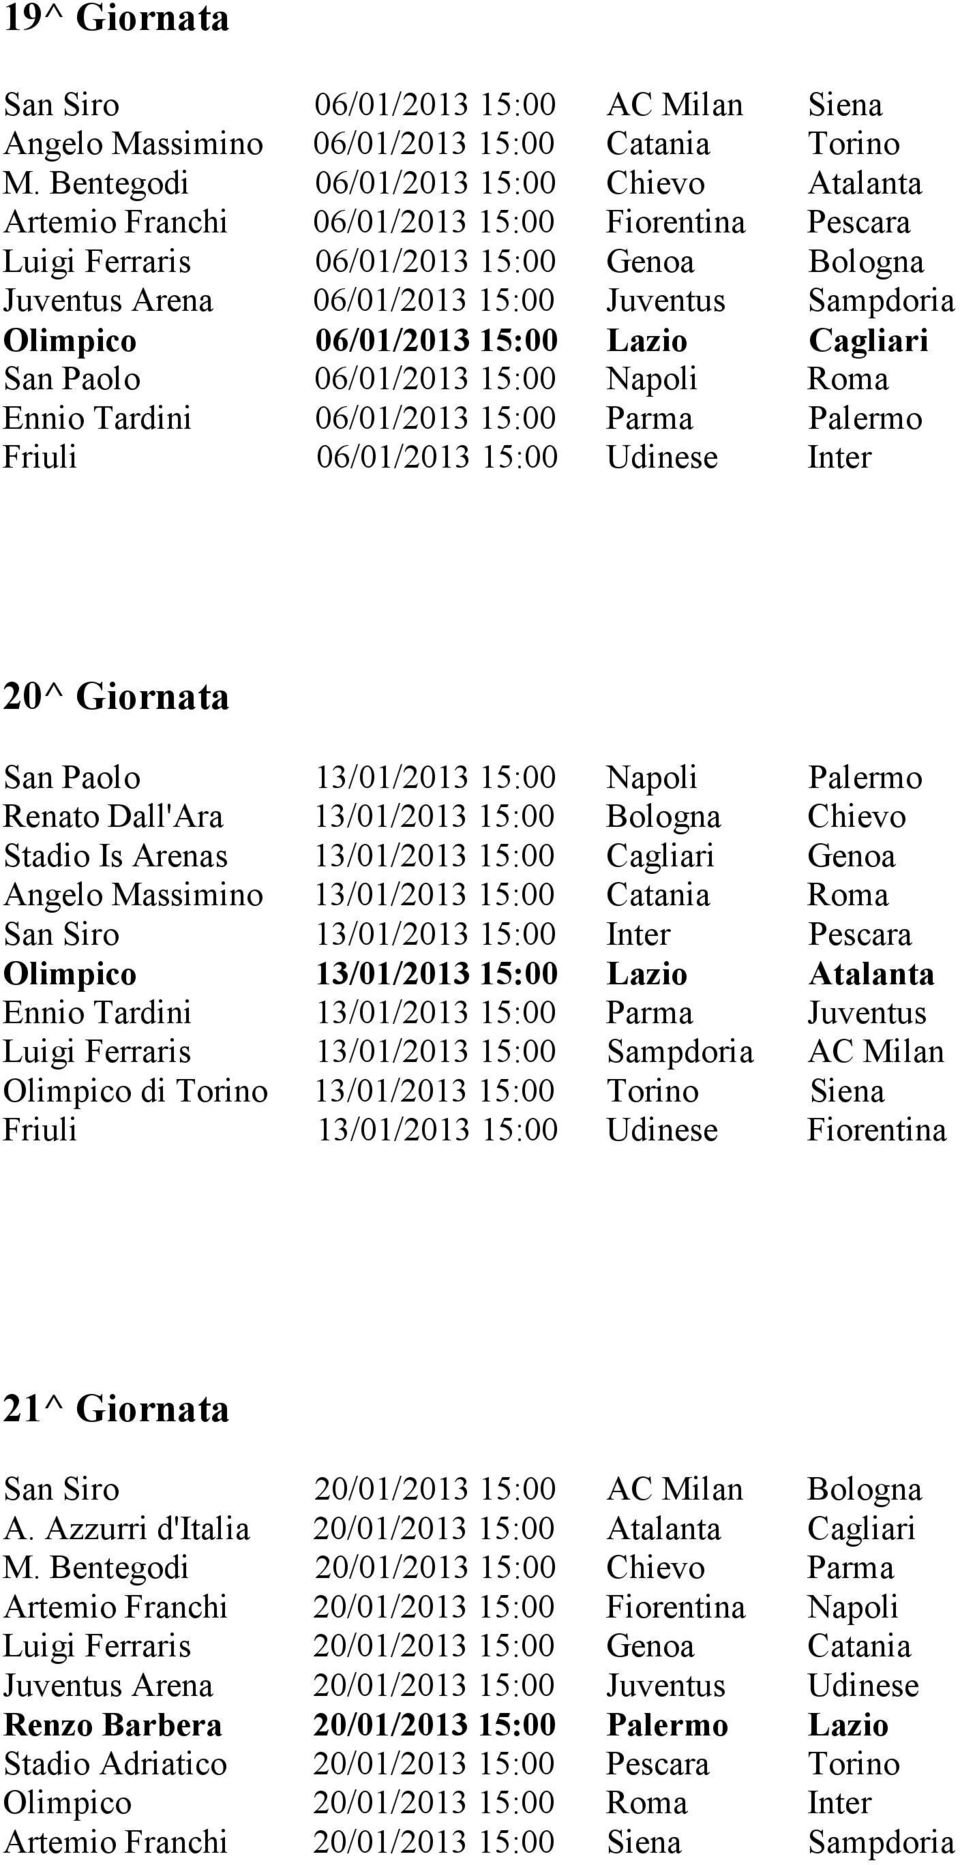 Olimpico 06/01/2013 15:00 Lazio Cagliari San Paolo 06/01/2013 15:00 Napoli Roma Ennio Tardini 06/01/2013 15:00 Parma Palermo Friuli 06/01/2013 15:00 Udinese Inter 20^ Giornata San Paolo 13/01/2013